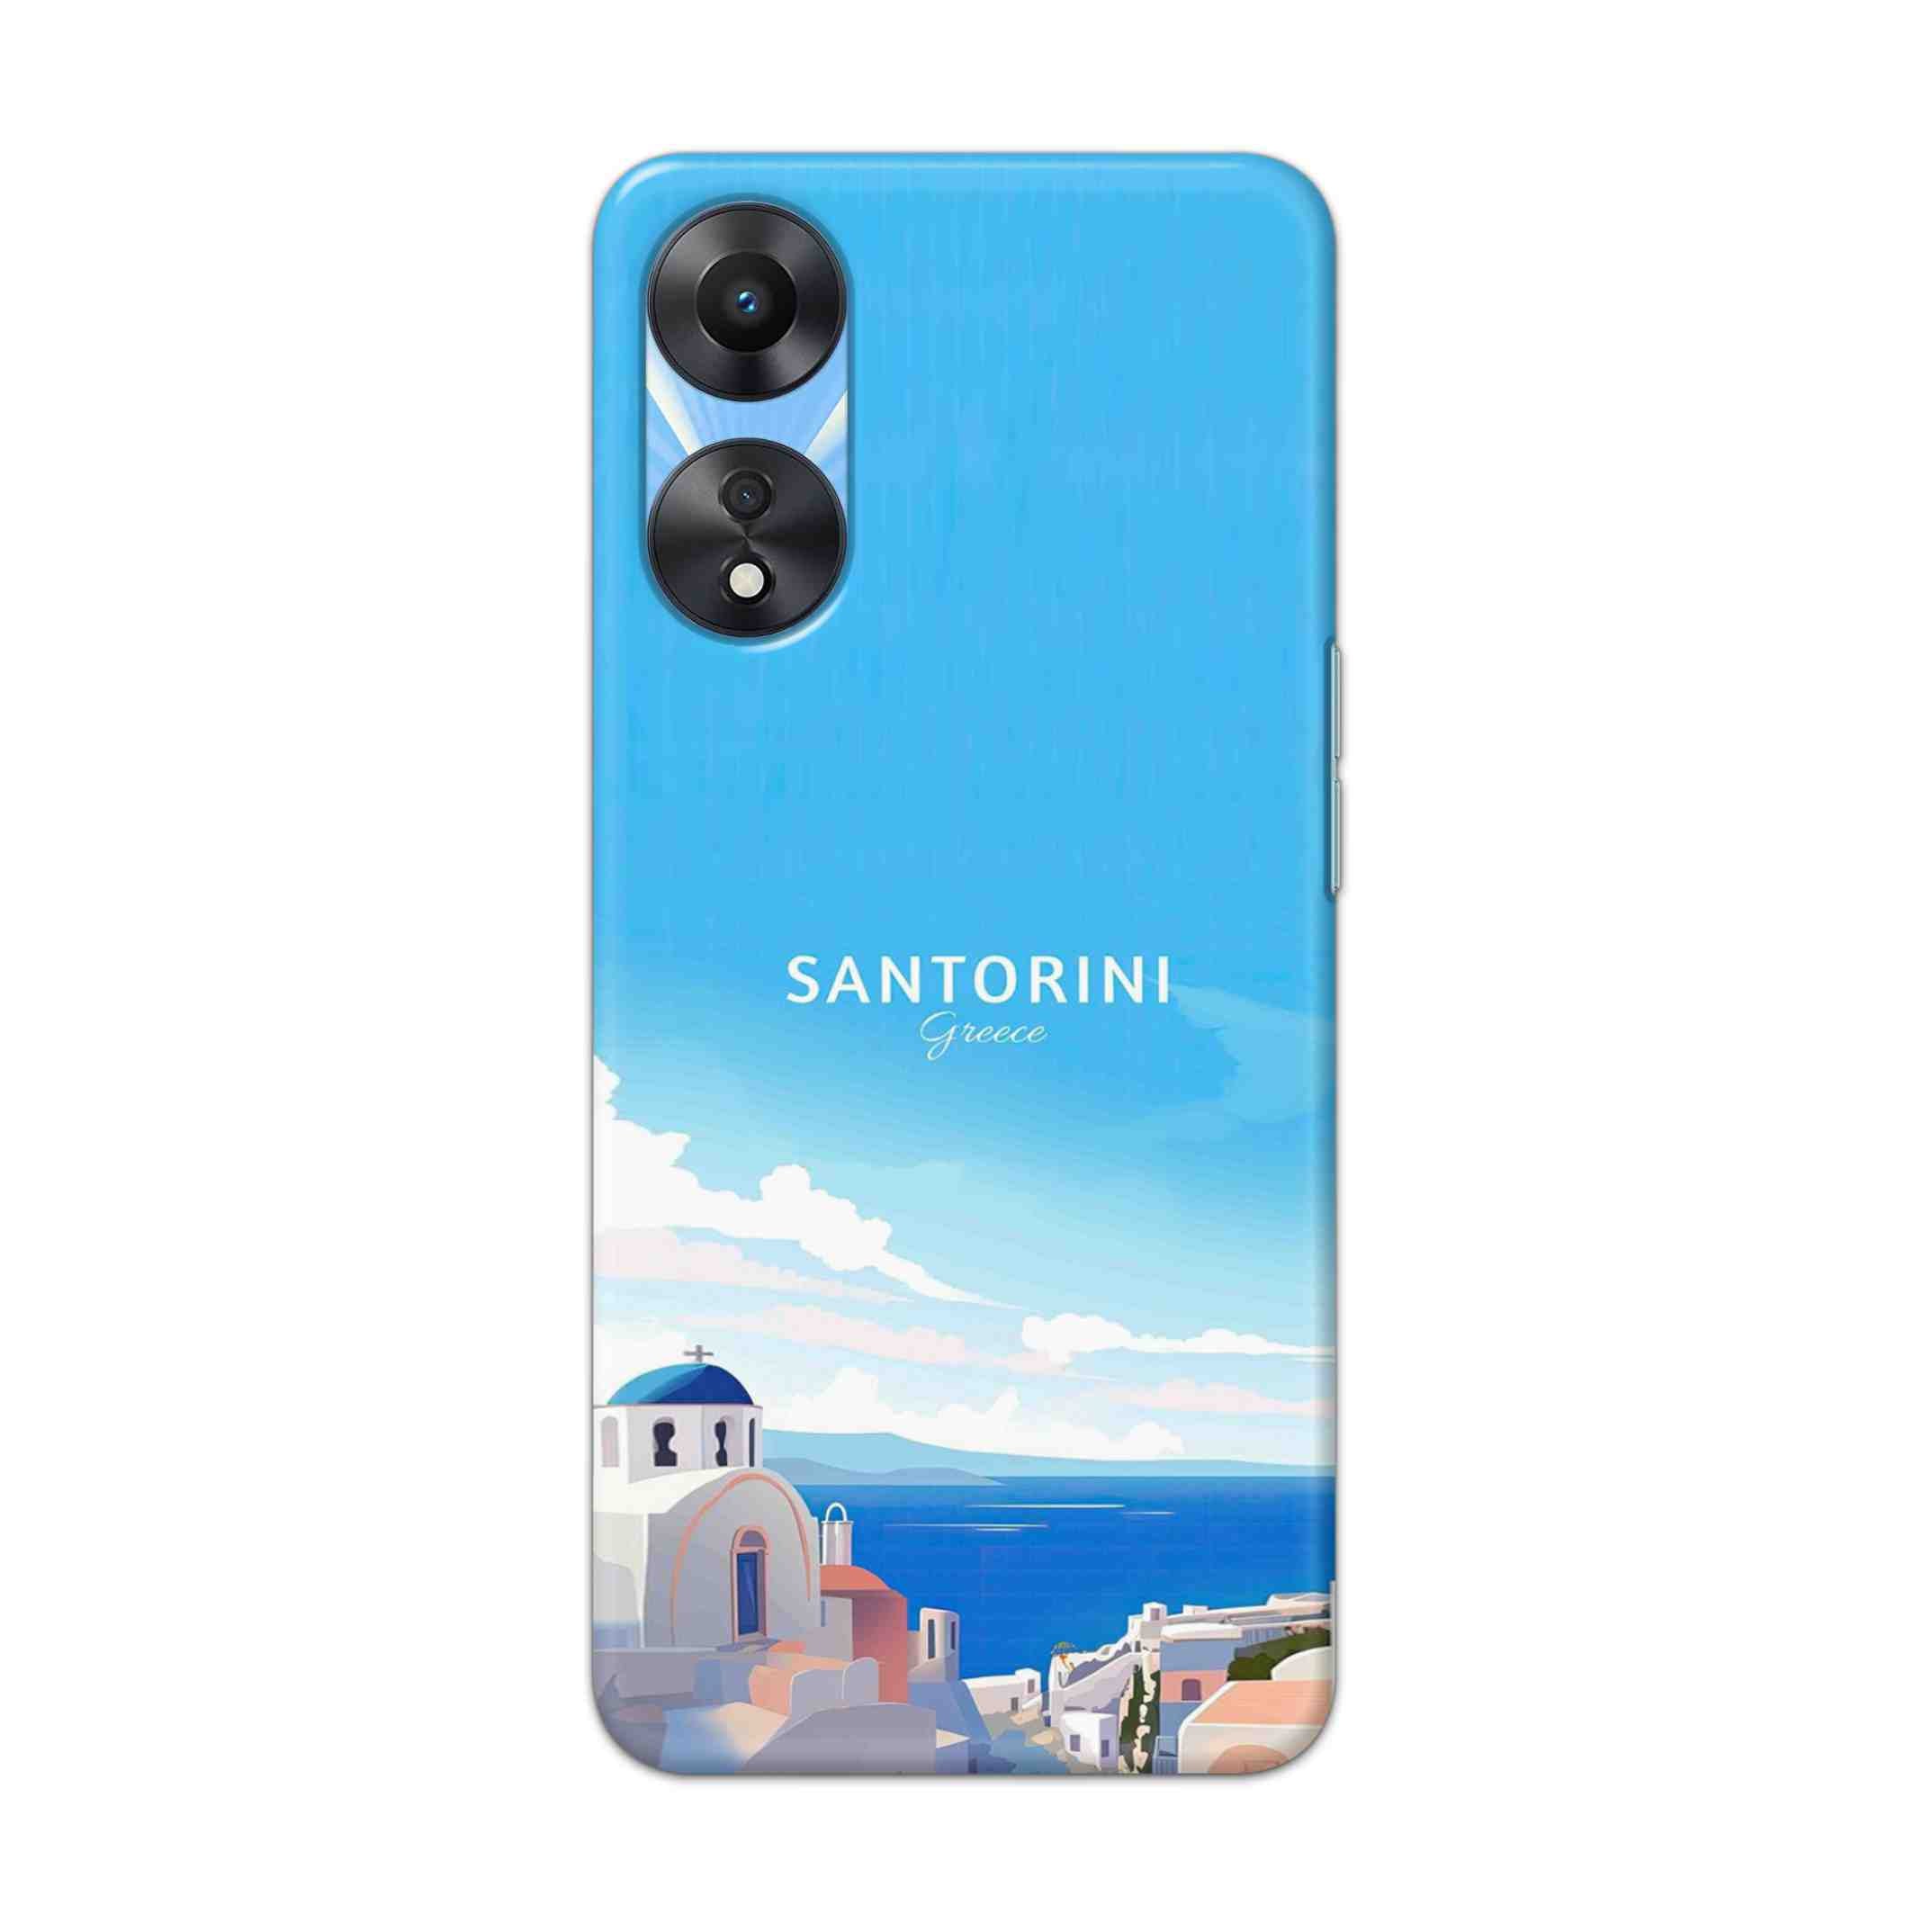 Buy Santorini Hard Back Mobile Phone Case Cover For OPPO A78 Online